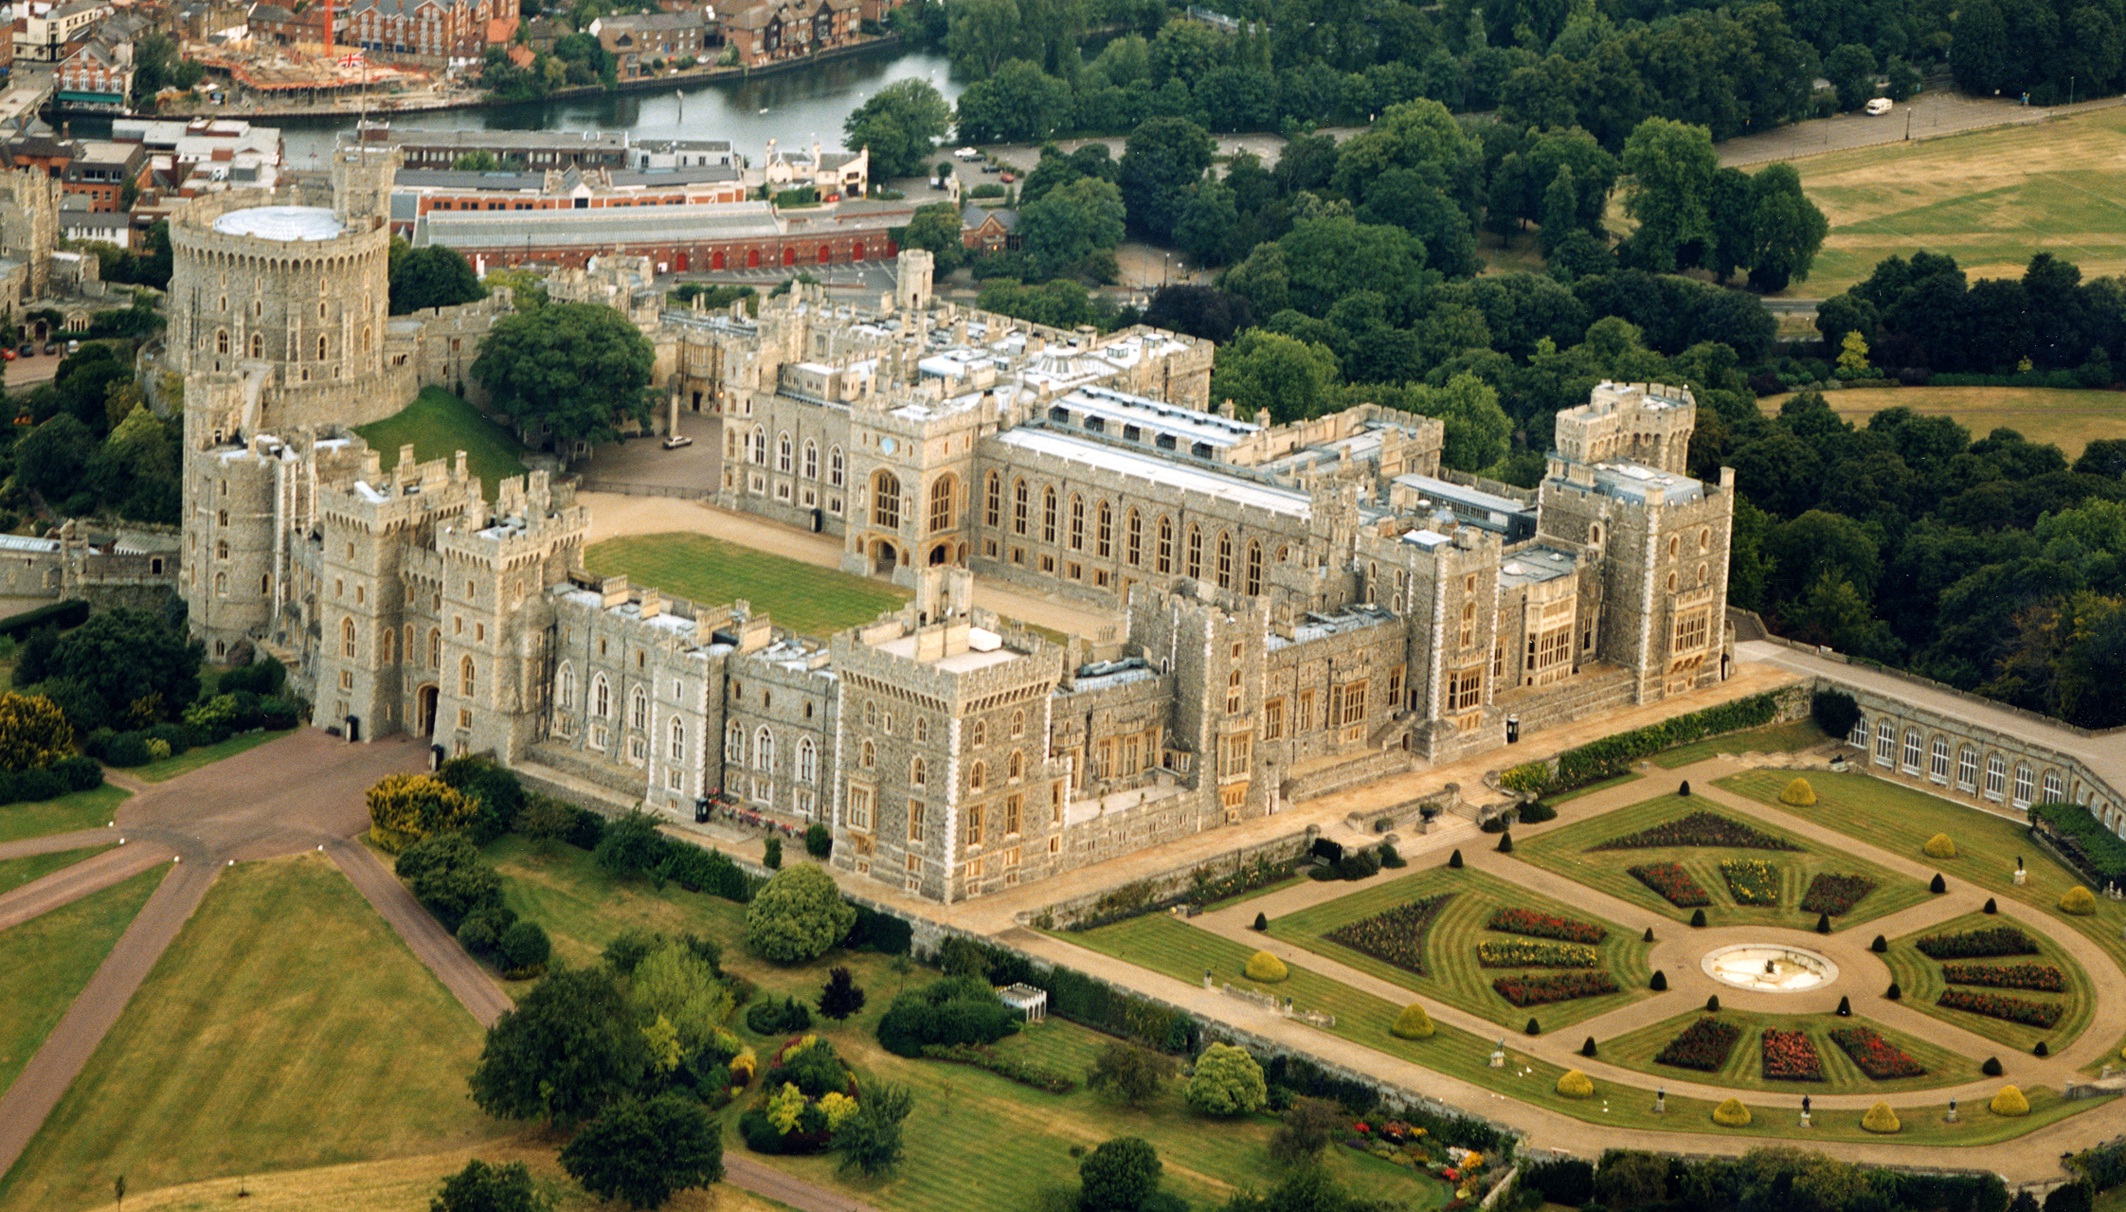 Images of Windsor Castle | 2126x1212